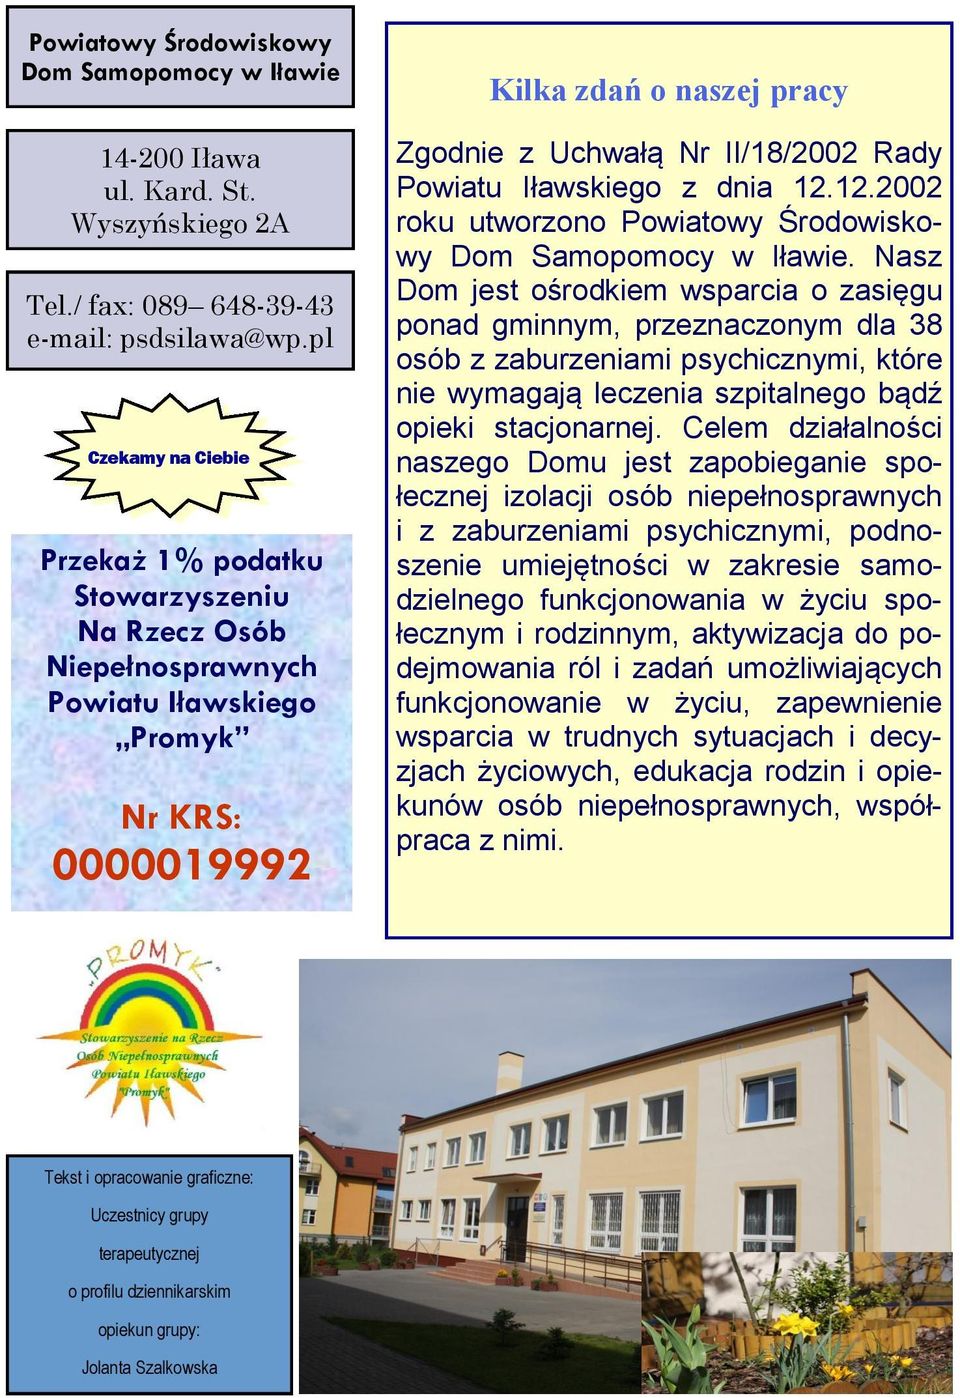 Powiatu Iławskiego z dnia 12.12.2002 roku utworzono Powiatowy Środowiskowy Dom Samopomocy w Iławie.